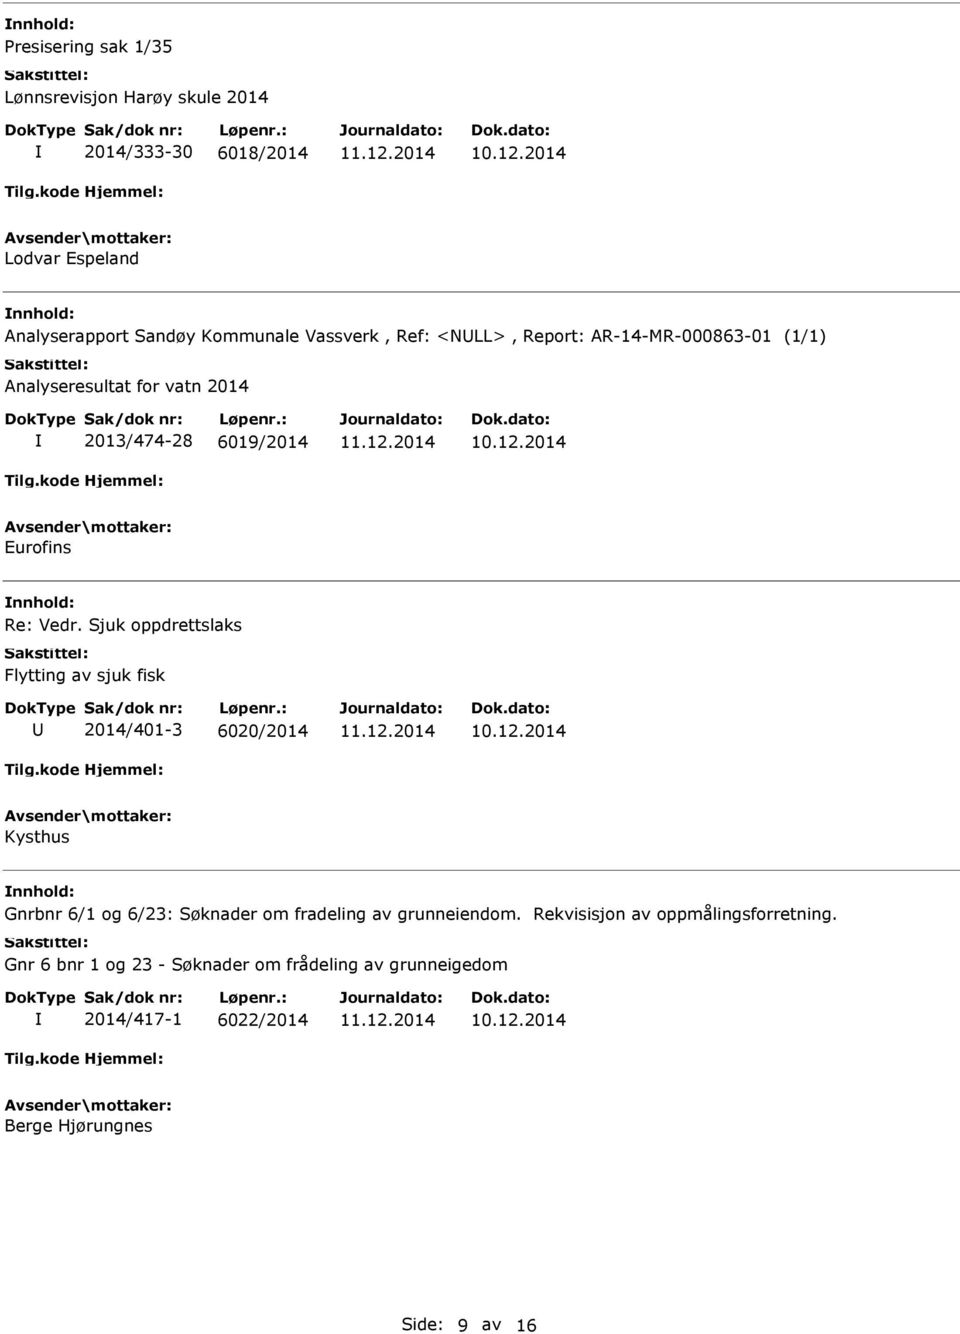 Sjuk oppdrettslaks Flytting av sjuk fisk 2014/401-3 6020/2014 Kysthus Gnrbnr 6/1 og 6/23: Søknader om fradeling av grunneiendom.